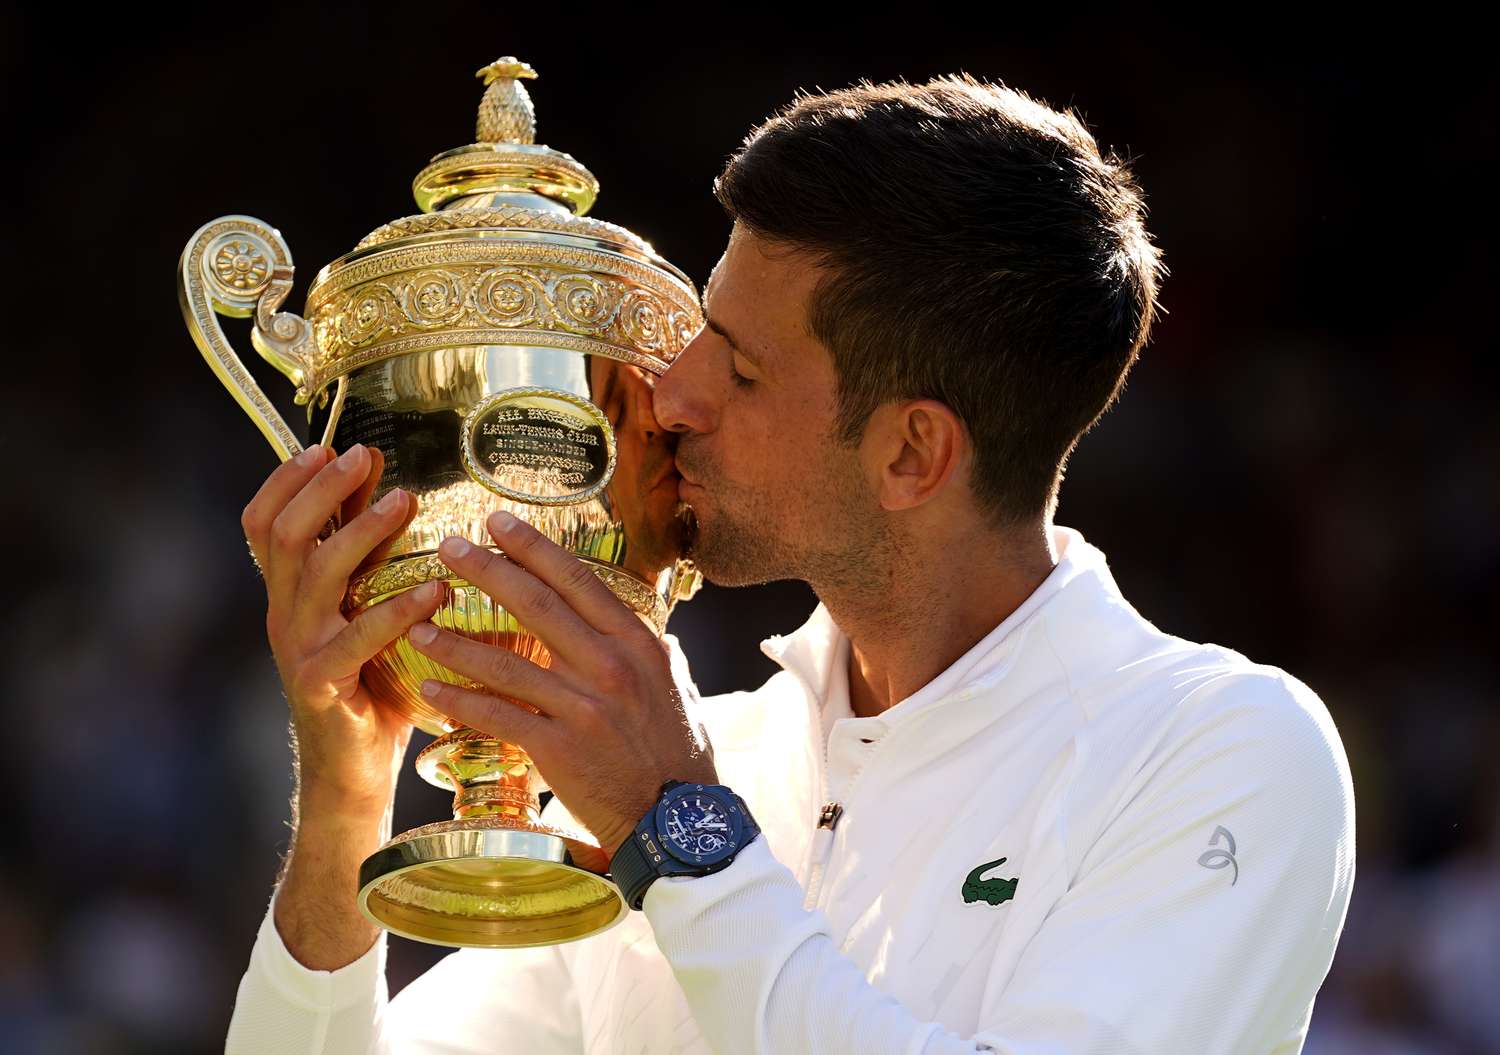 Djokovic ganó Wimbledon hace dos semanas.